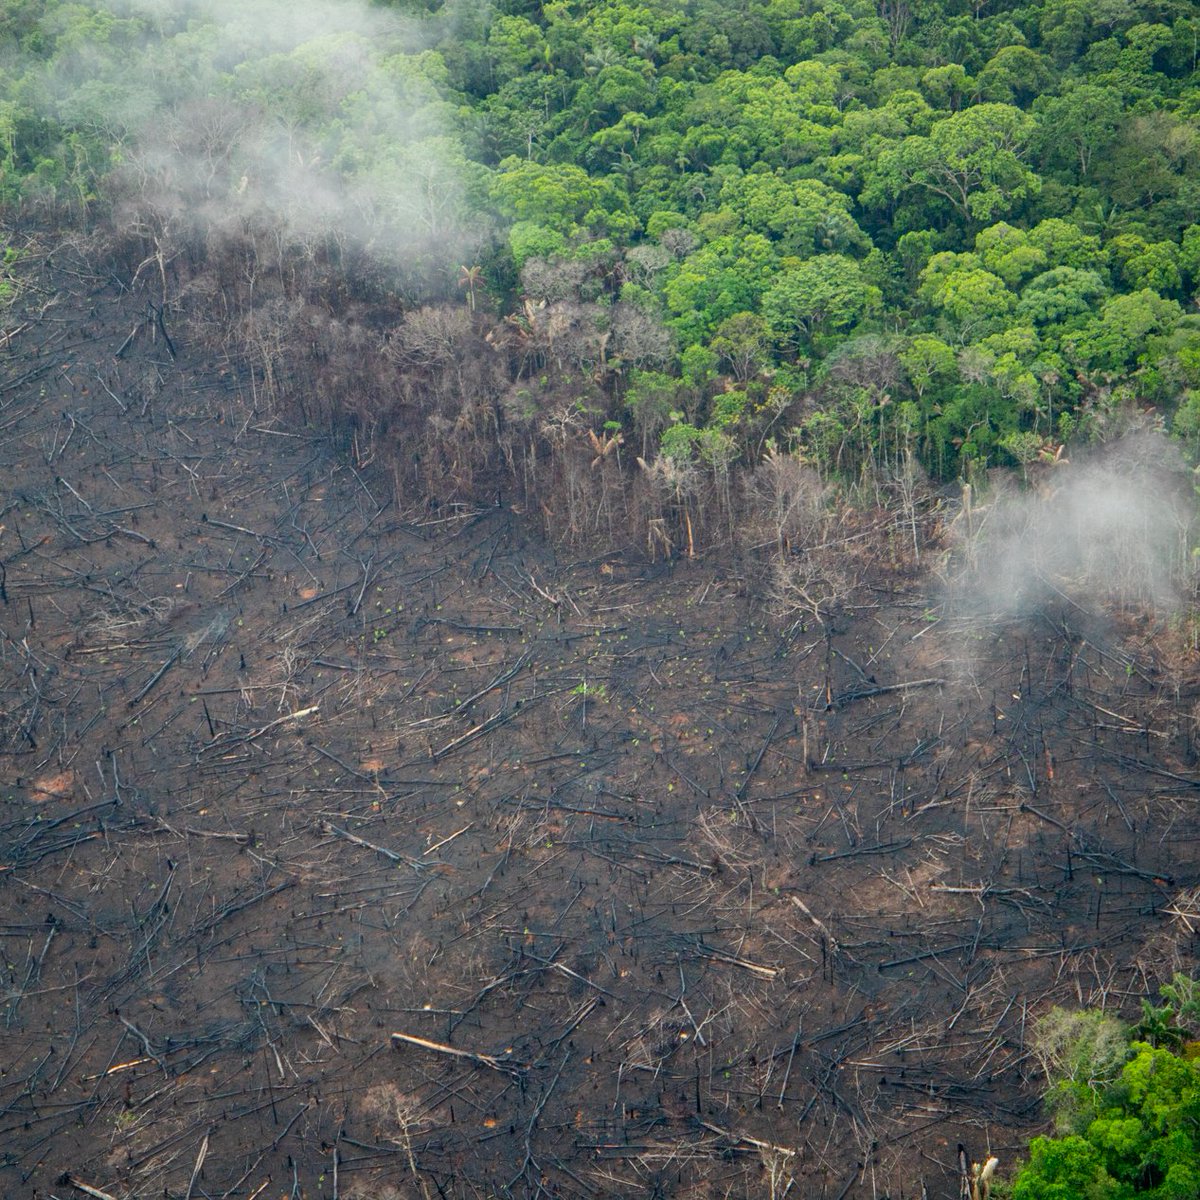 Estos huecos inmensos antes eran selva espesa. Sobrevolamos la Amazonía colombiana y vimos la afectación que sufren parques nacionales y reservas forestales. Junto a @USAID_Colombia, apoyamos al gobierno de Colombia para enfrentar la deforestación y los crímenes ambientales.